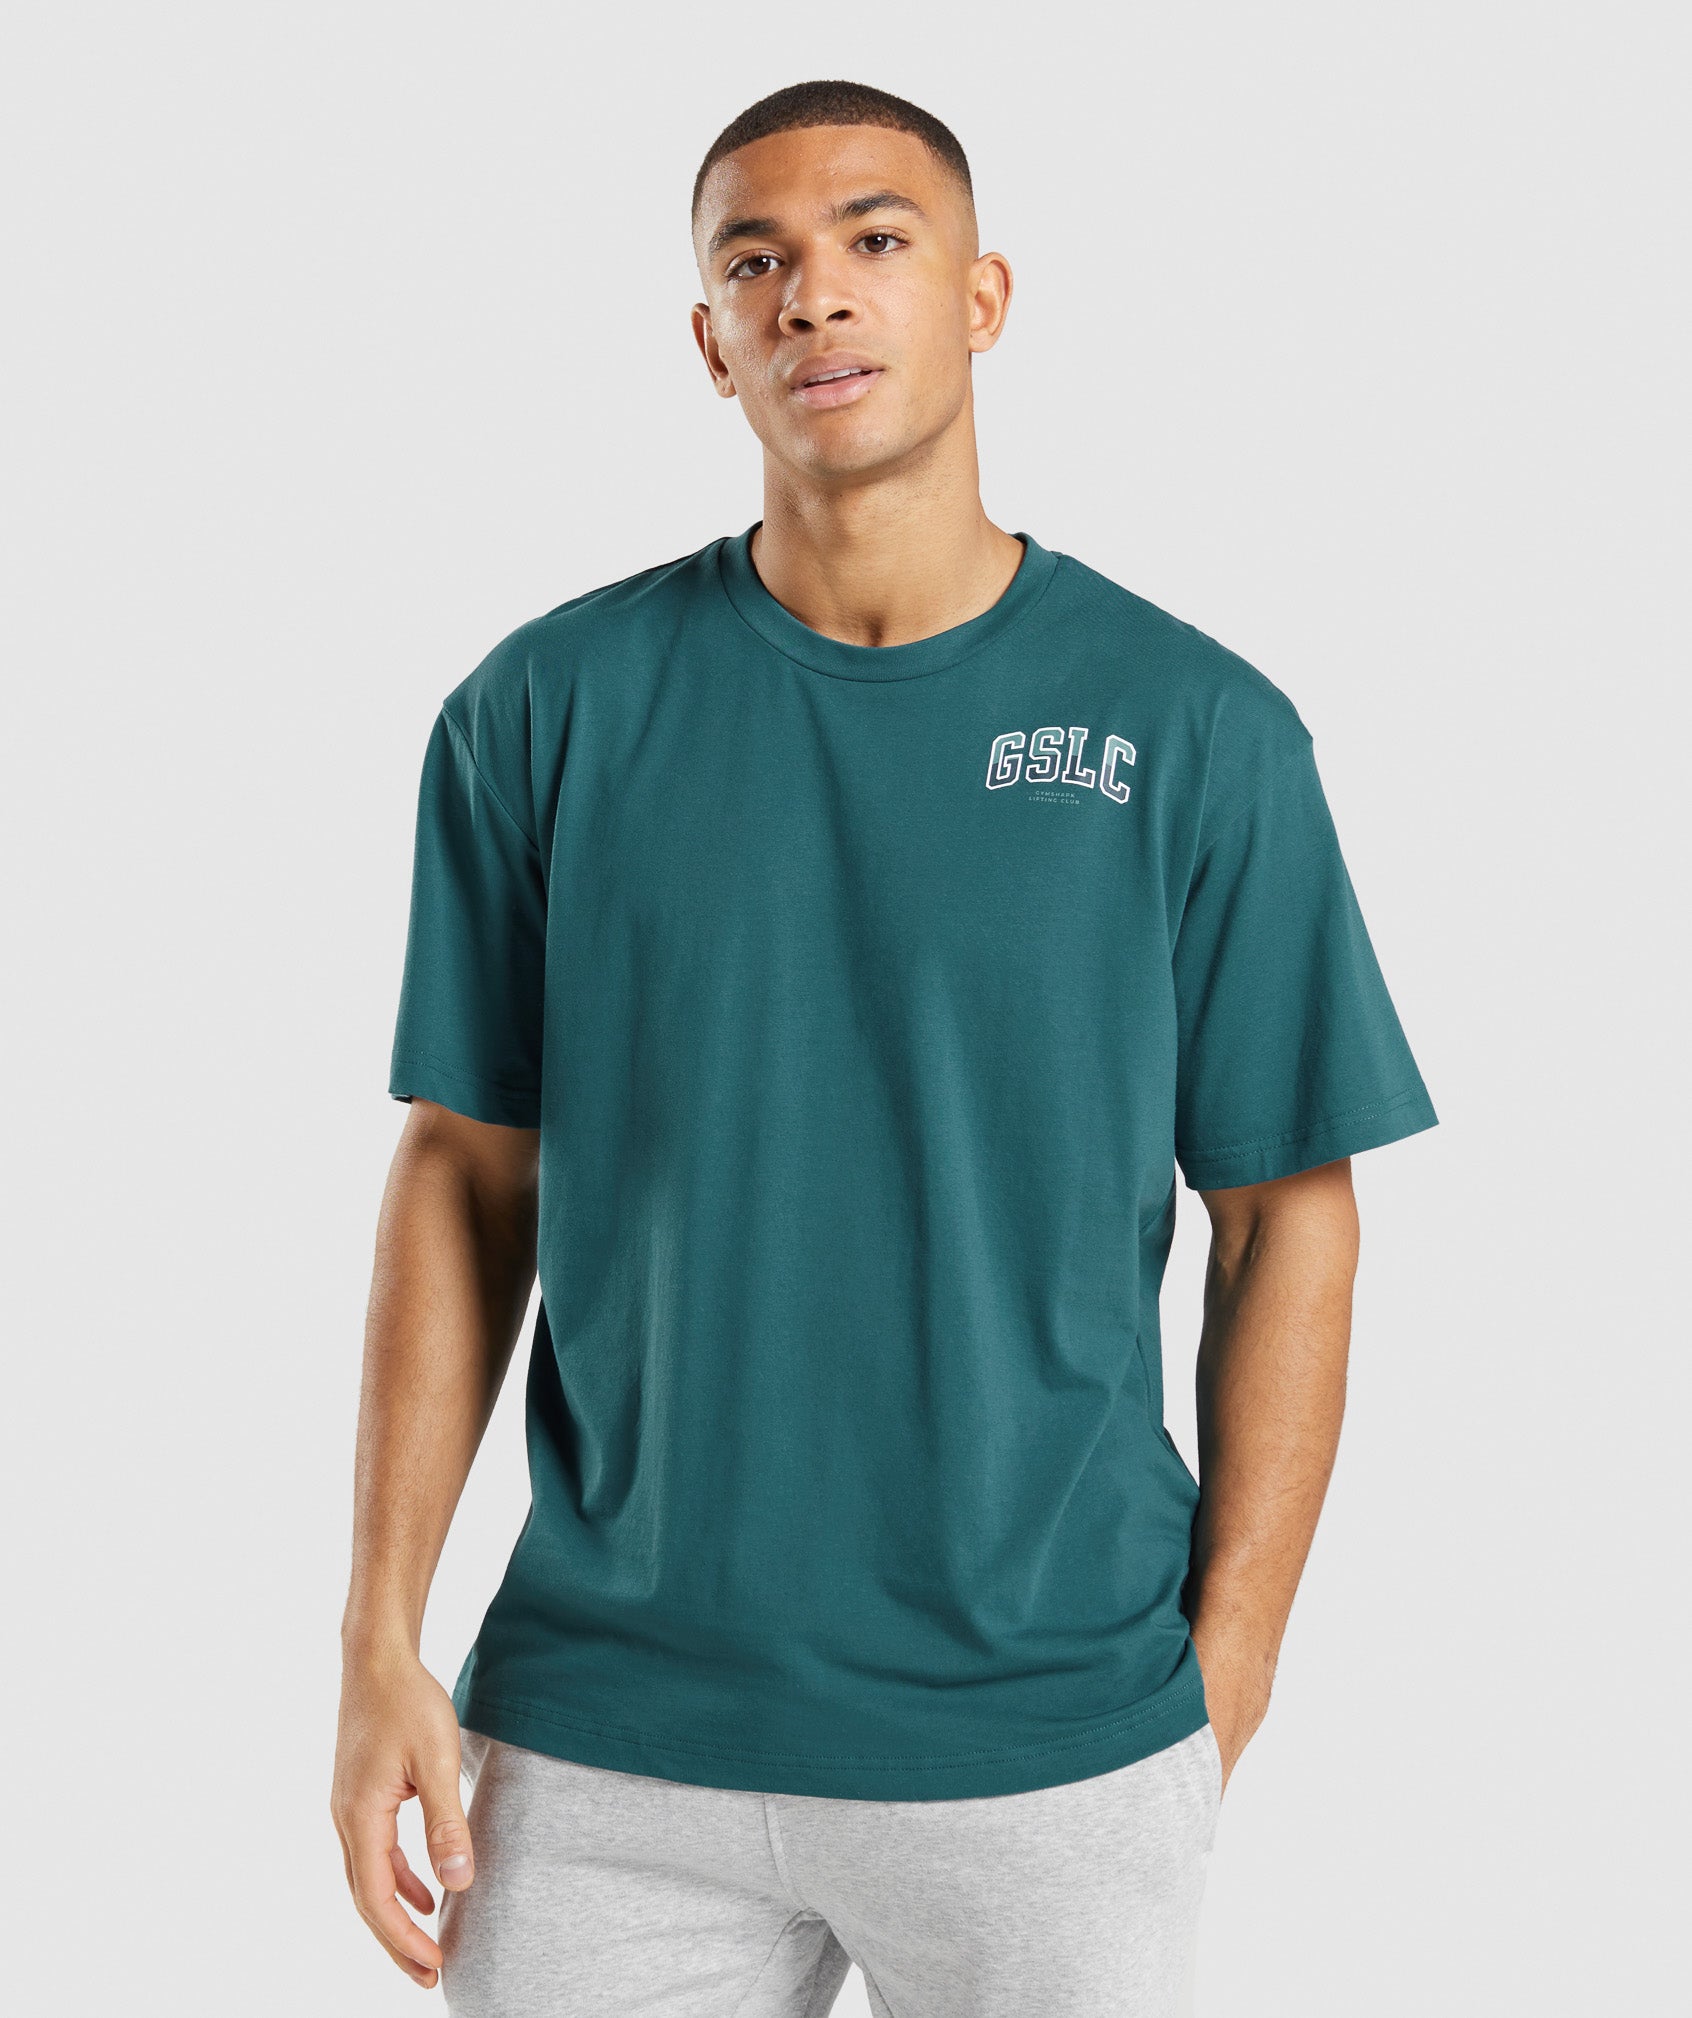 GSLC Oversized T-Shirt